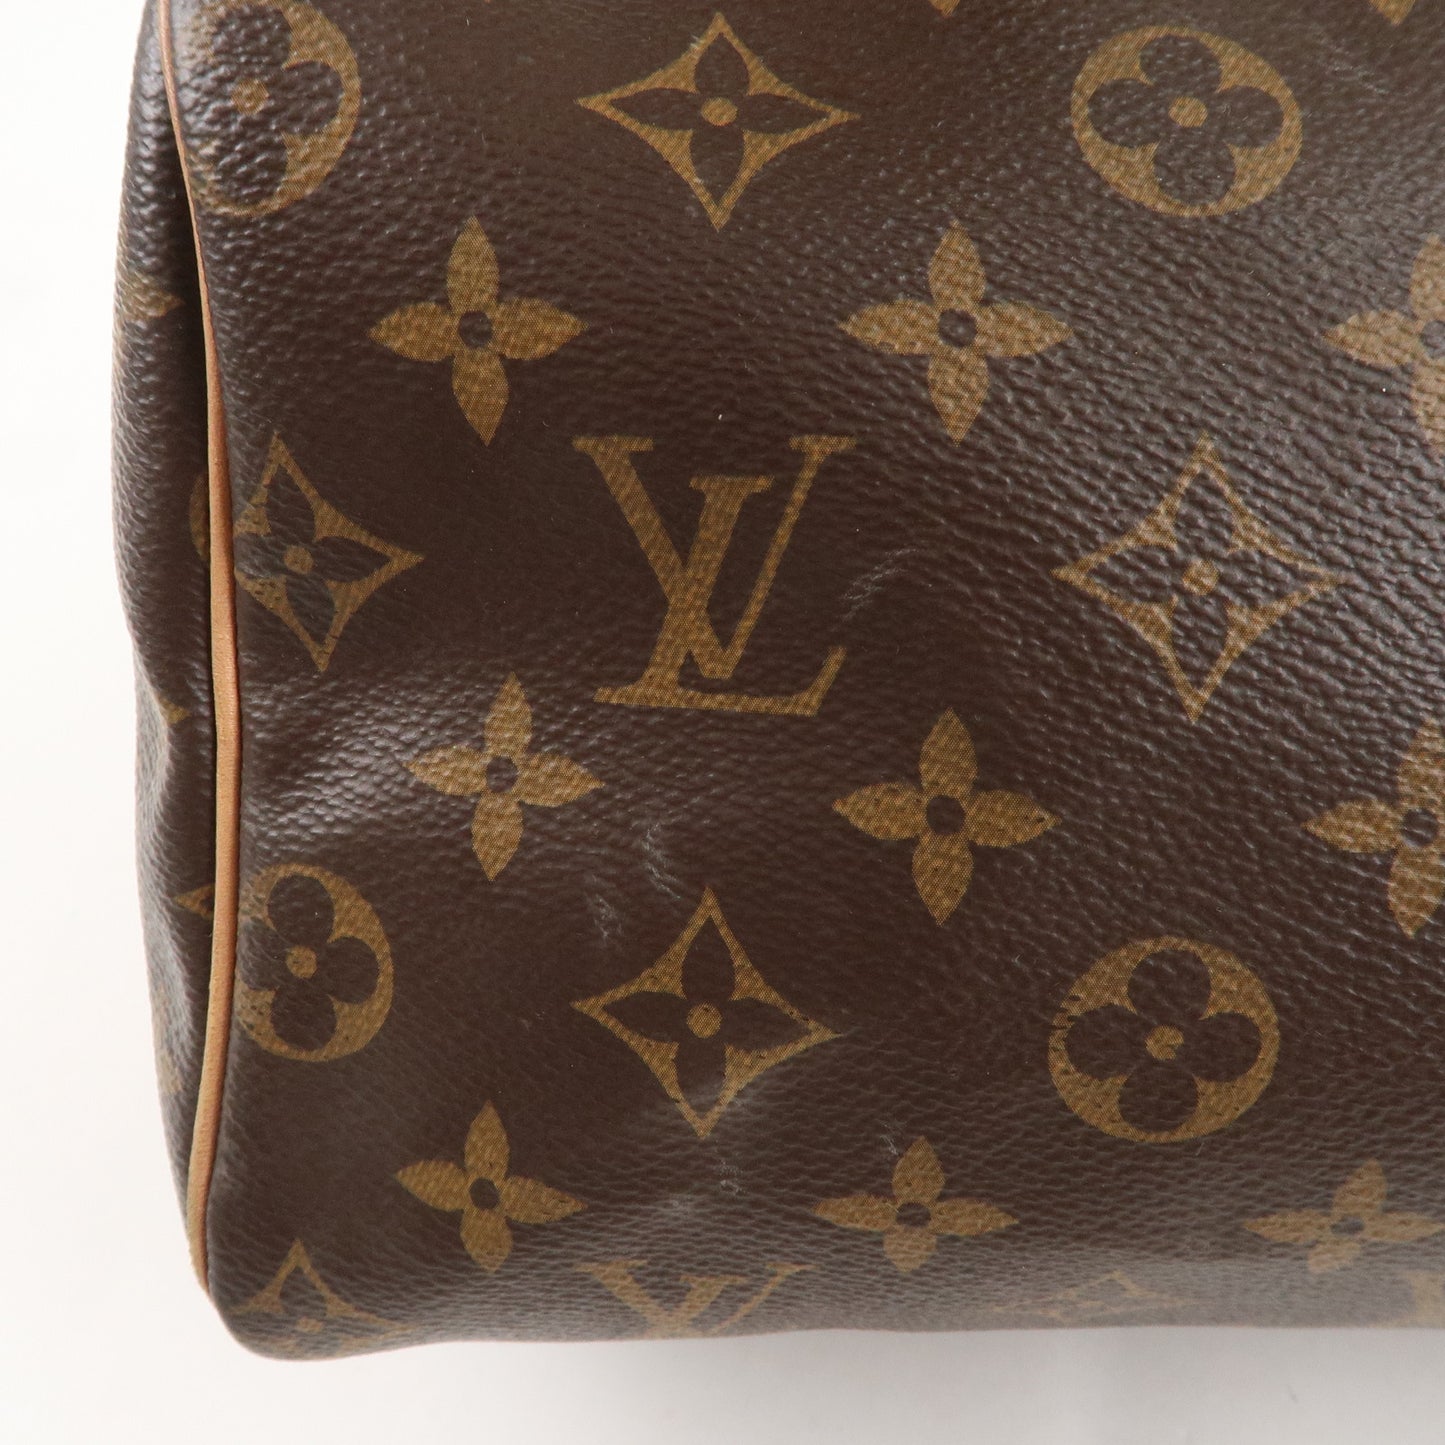 Louis Vuitton Monogram Speedy Bandouliere 25 Brown M41113